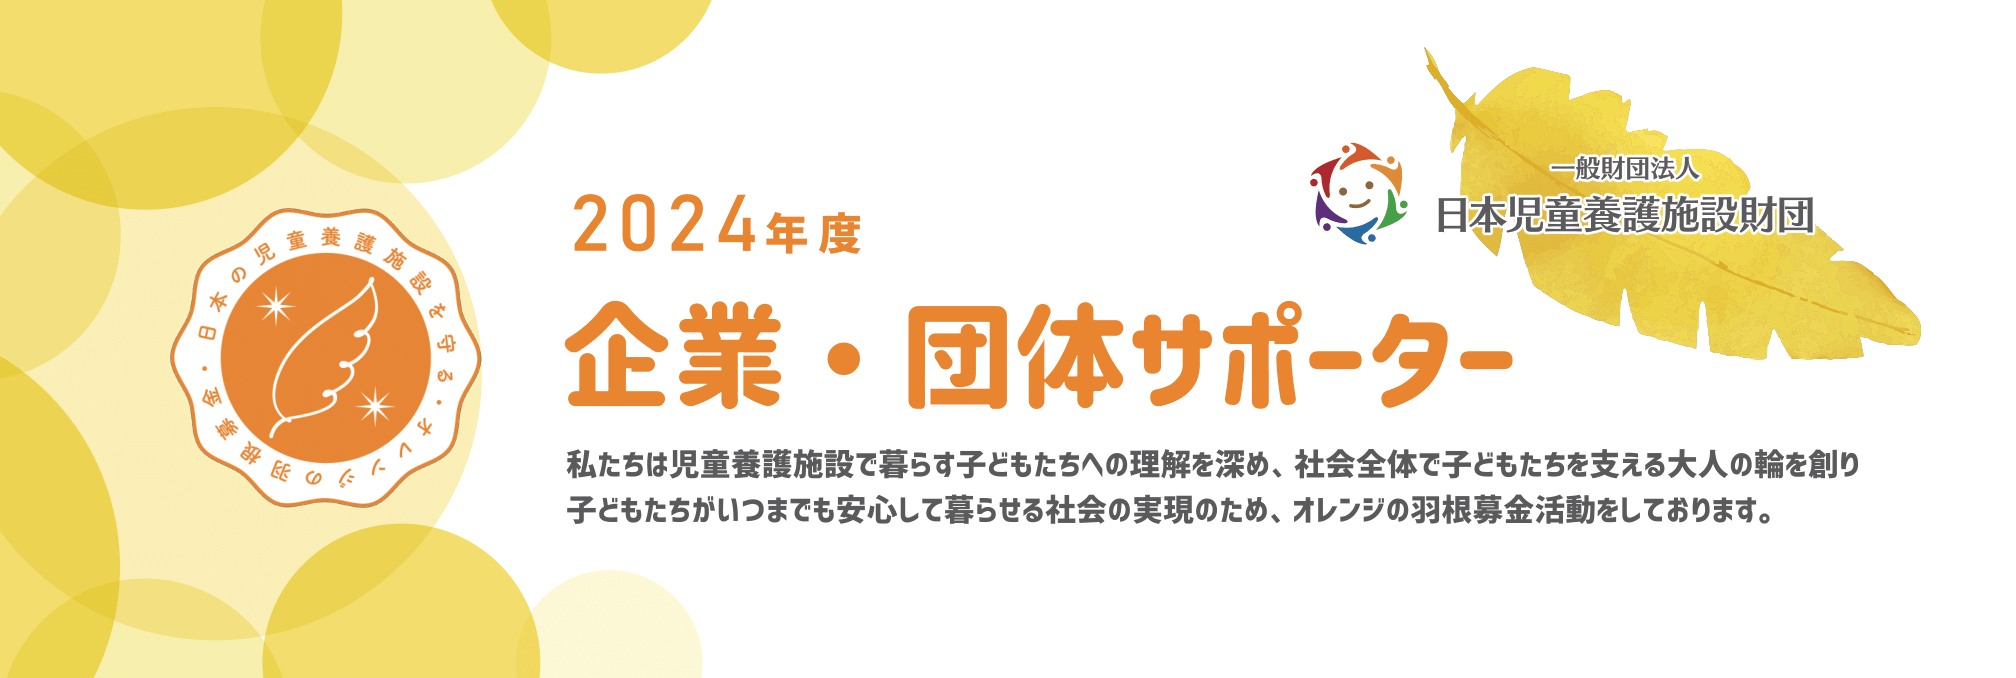 オレンジの羽企業・団体スポンサー